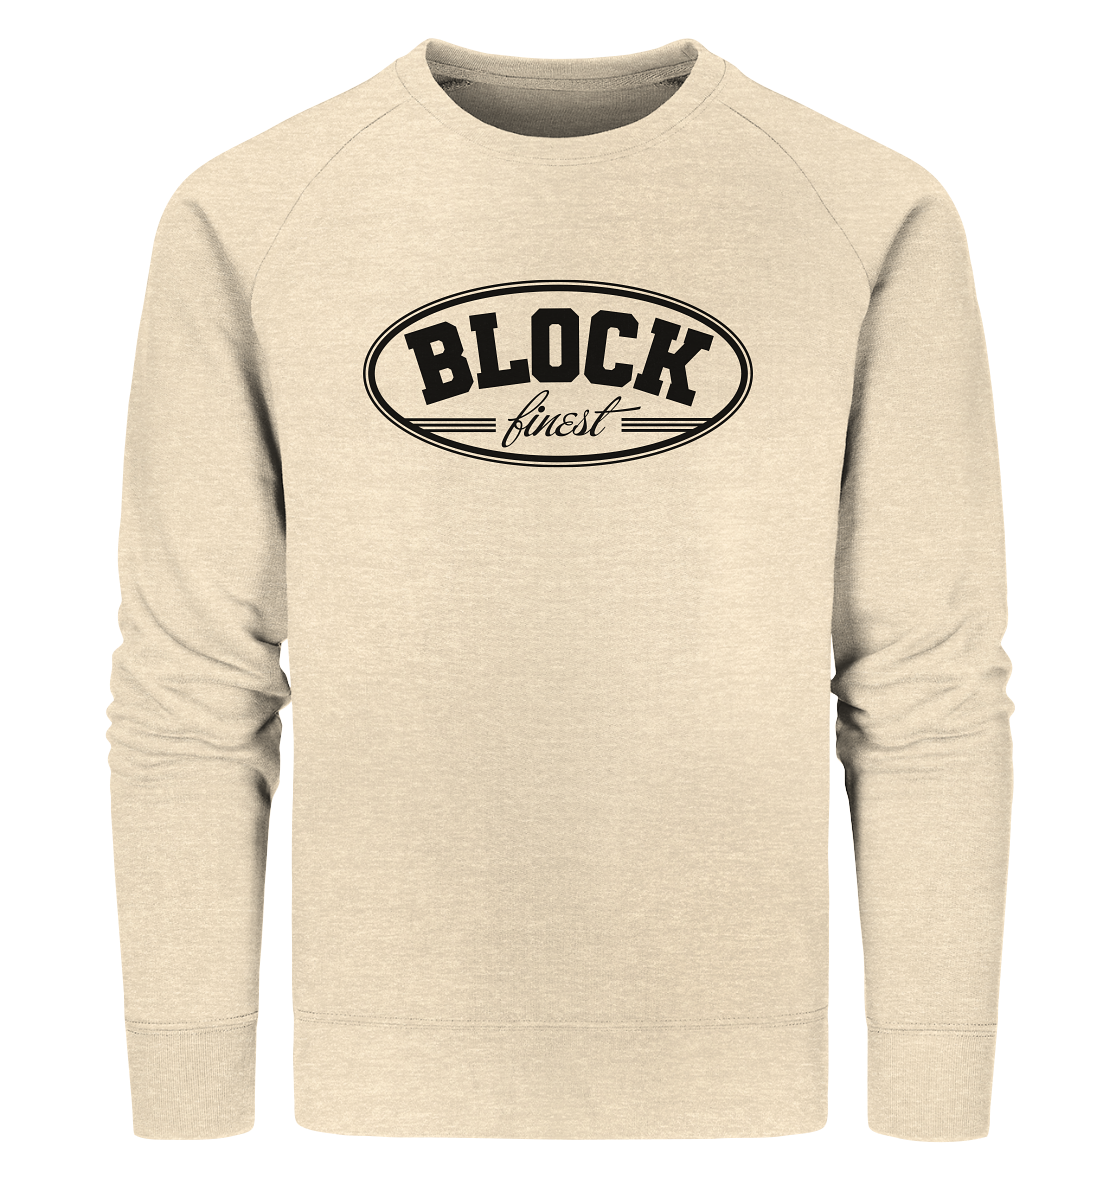 N.O.S.W. BLOCK Fanblock Sweater "BLOCK finest" Männer Organic Sweatshirt natural raw